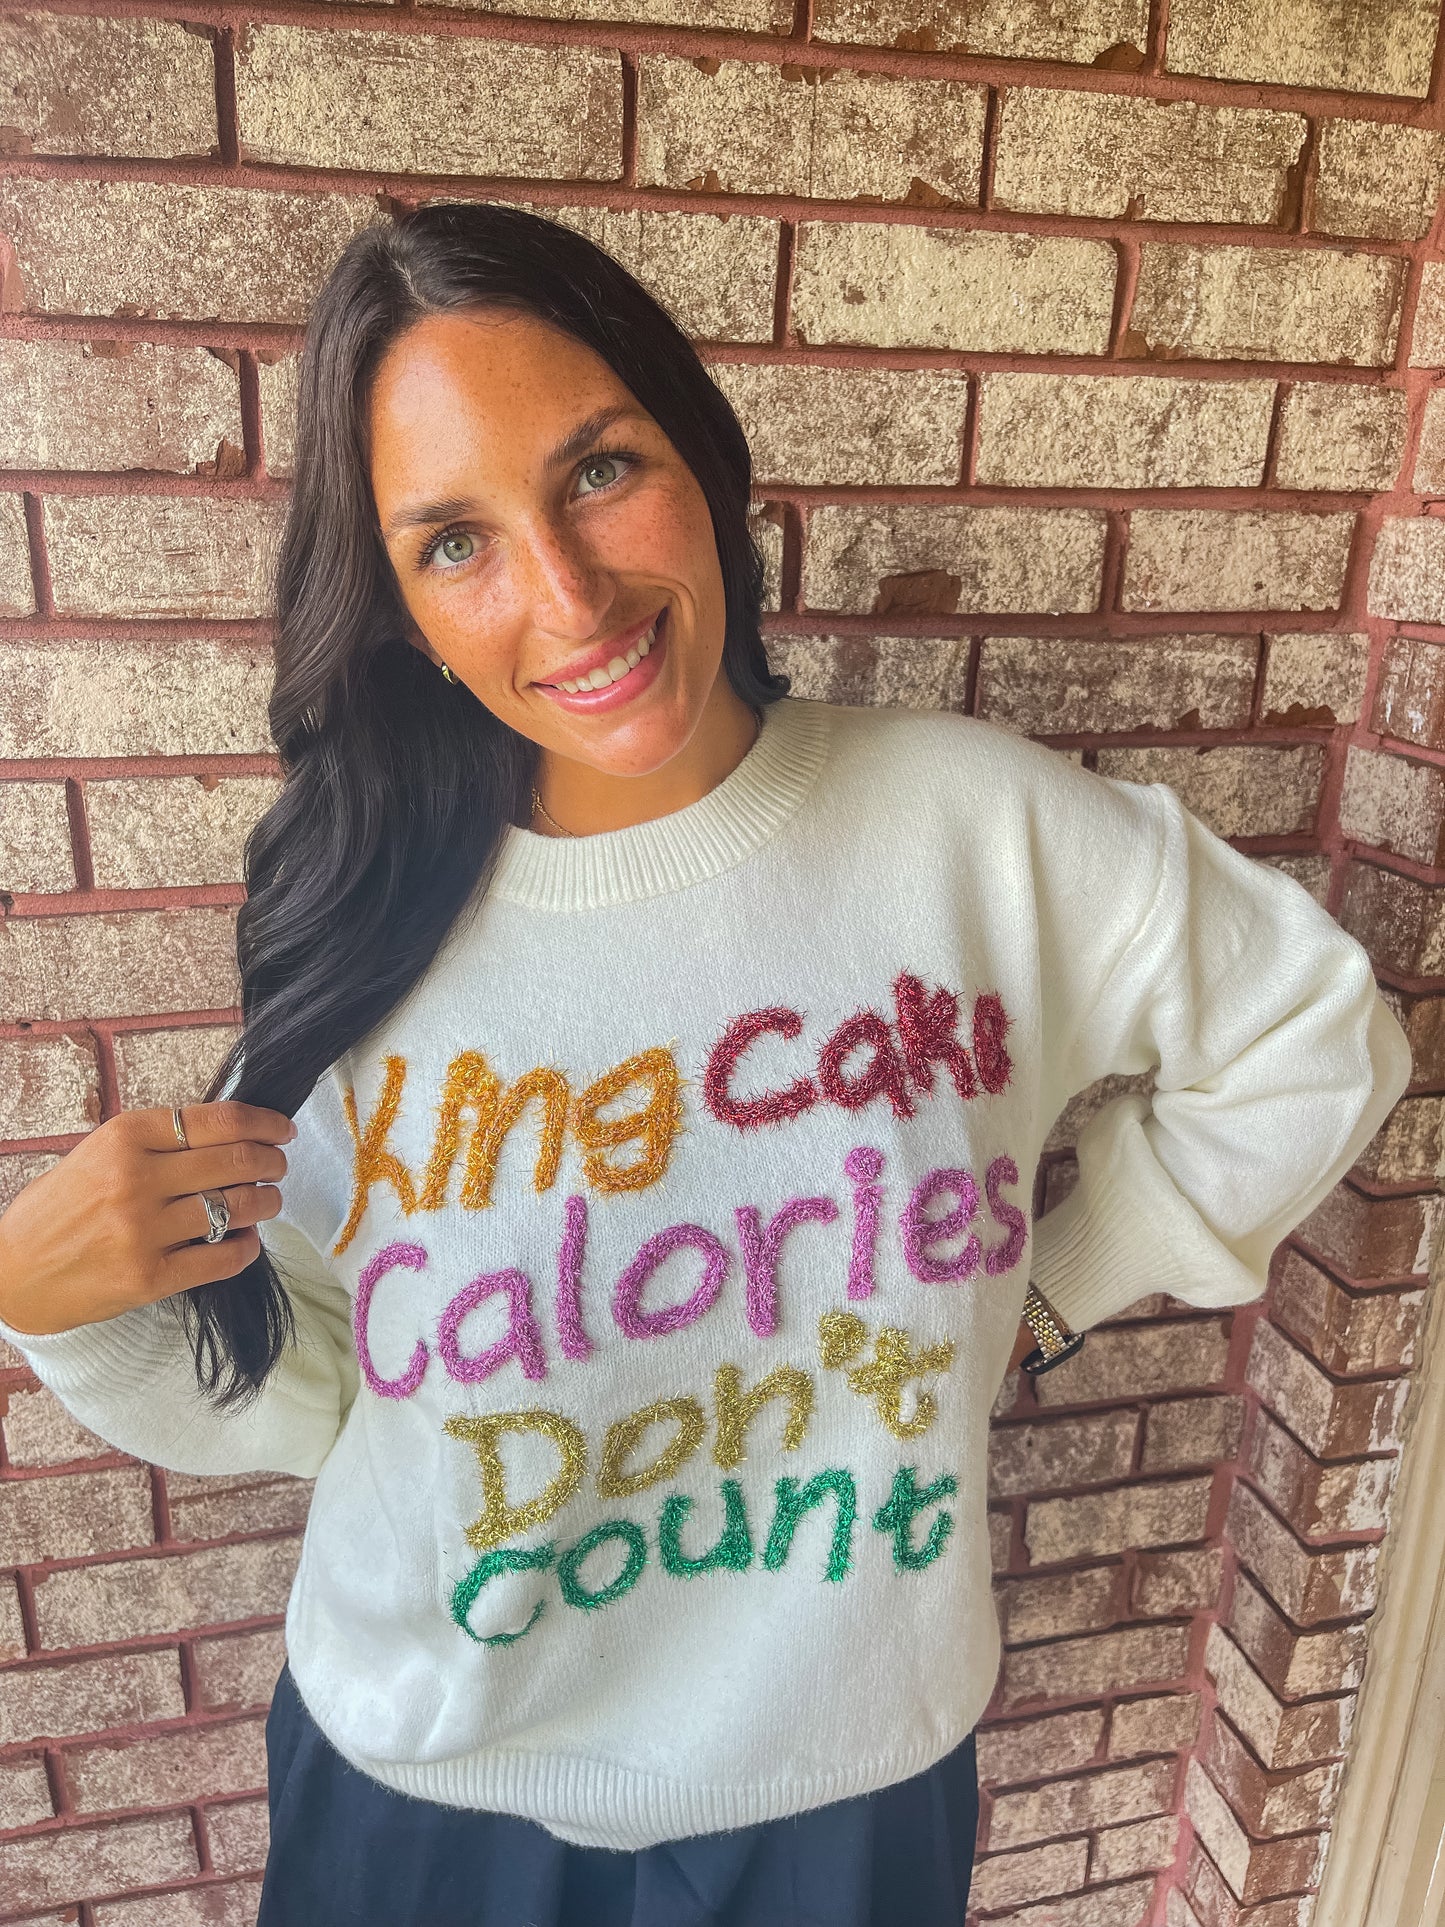 Kingcake Calories Sweater